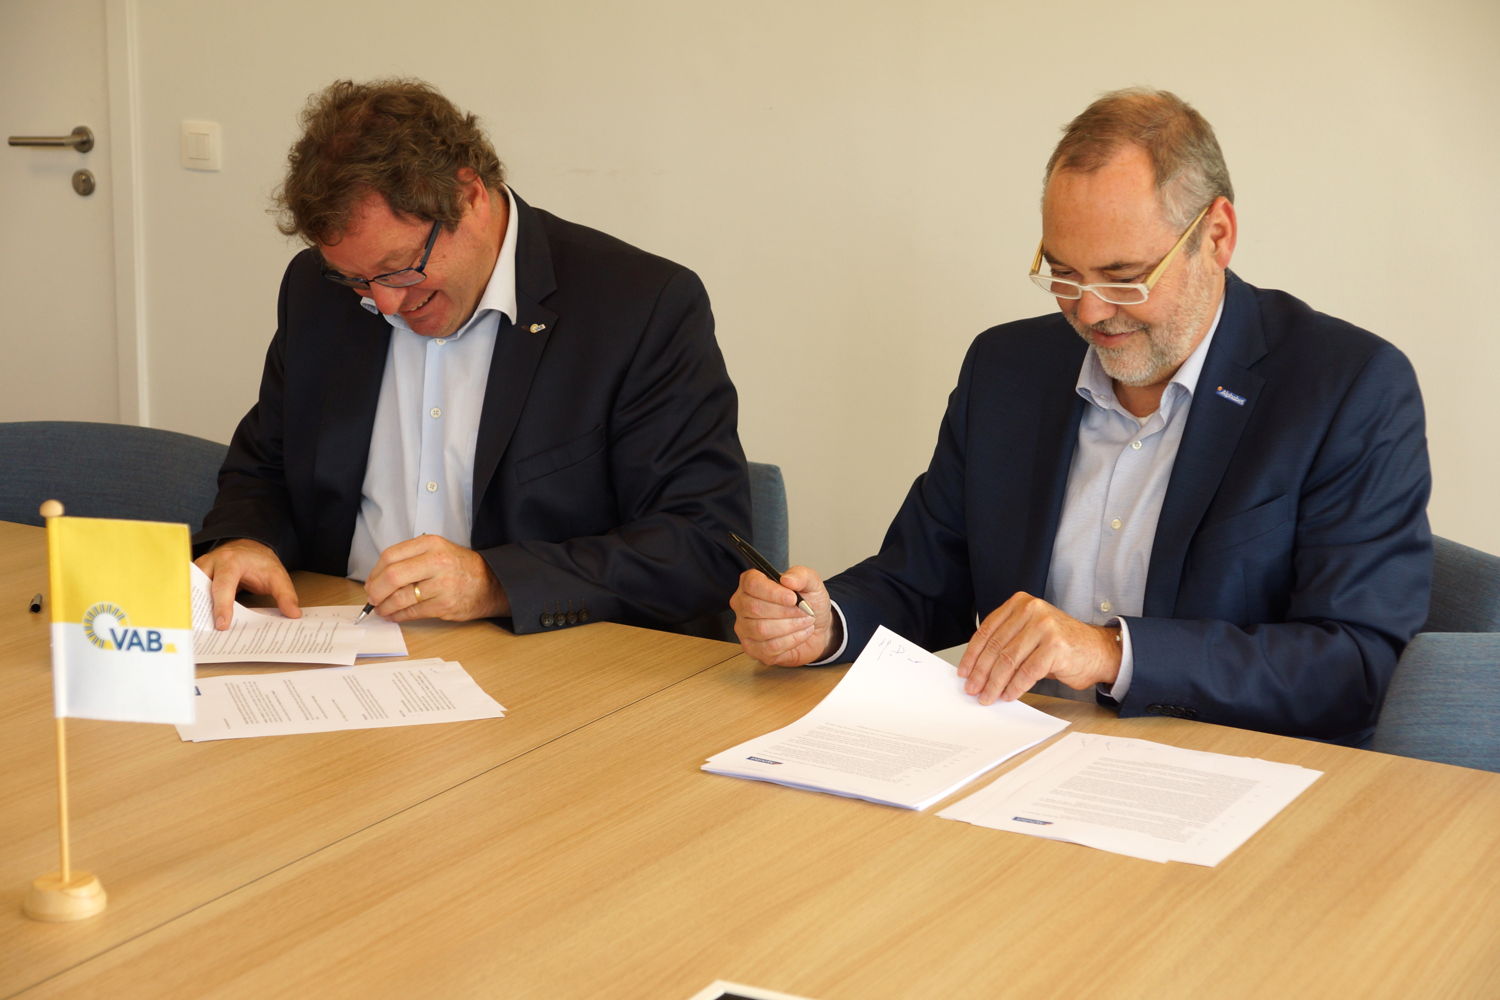 Erik Swerts, CEO d’Alphabet Belgium, et Geert Markey, CEO de VAB, apposent leur signature sur le nouveau contrat.